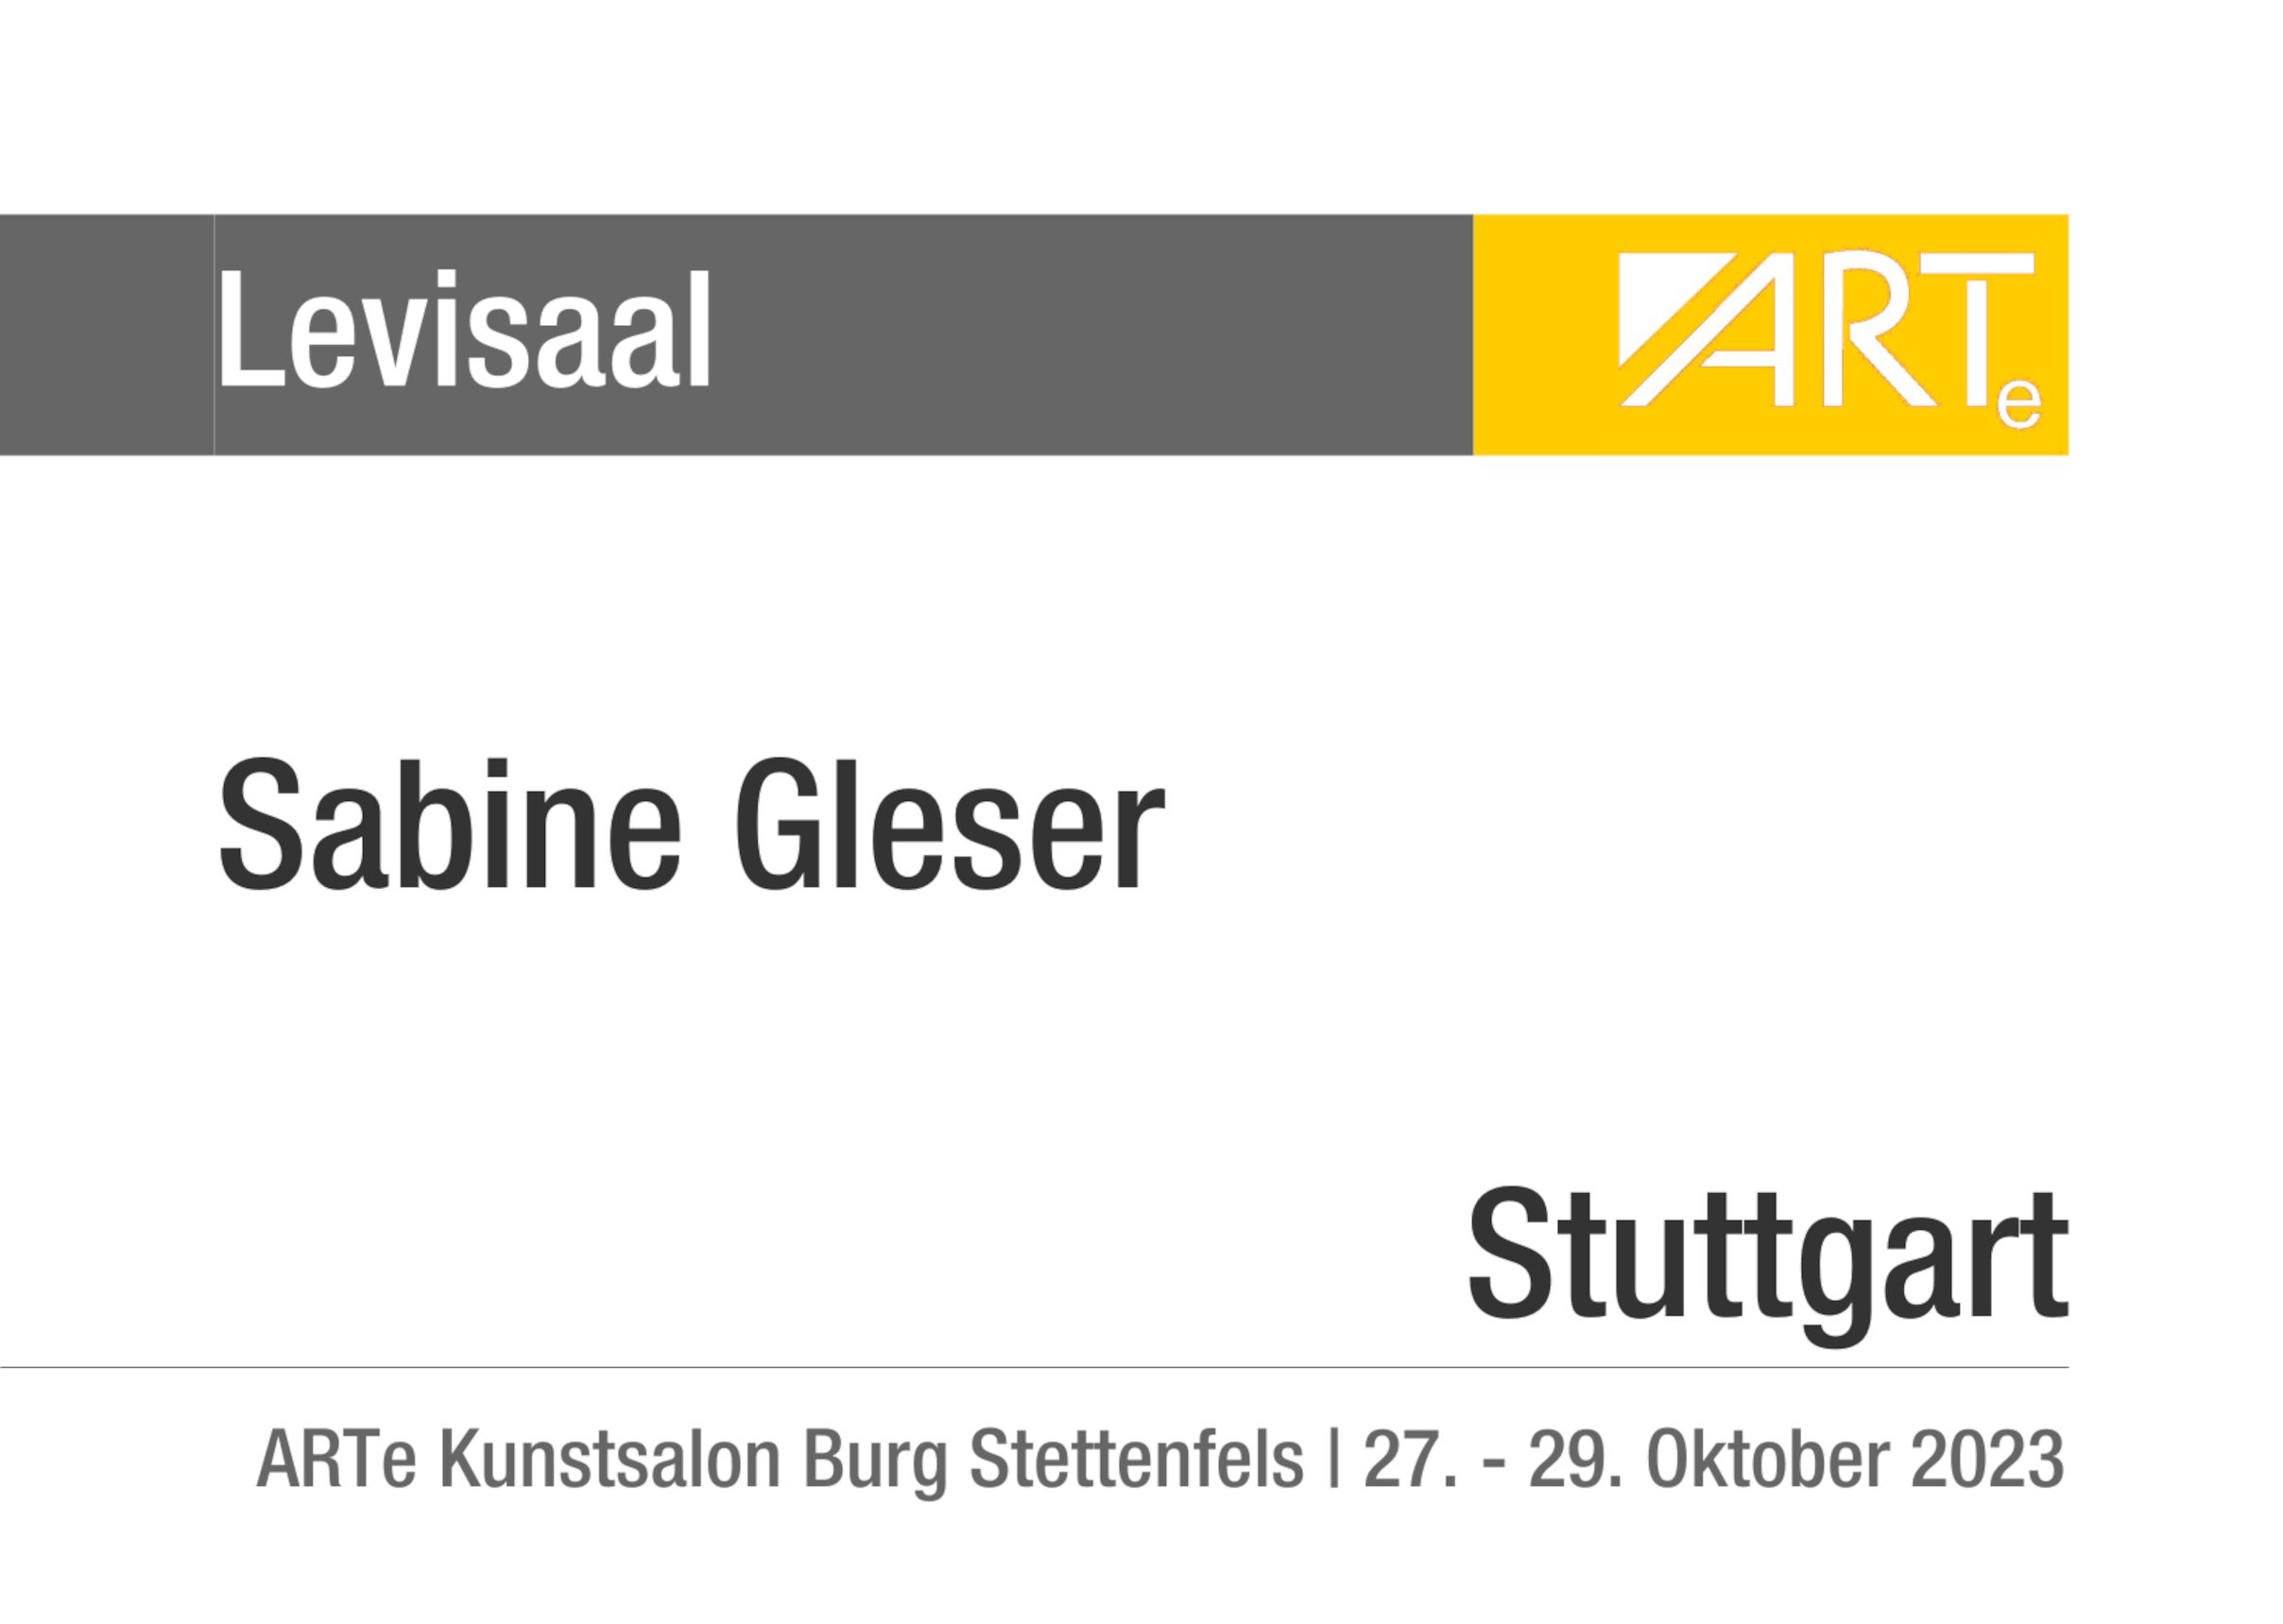 Sabine Gleser